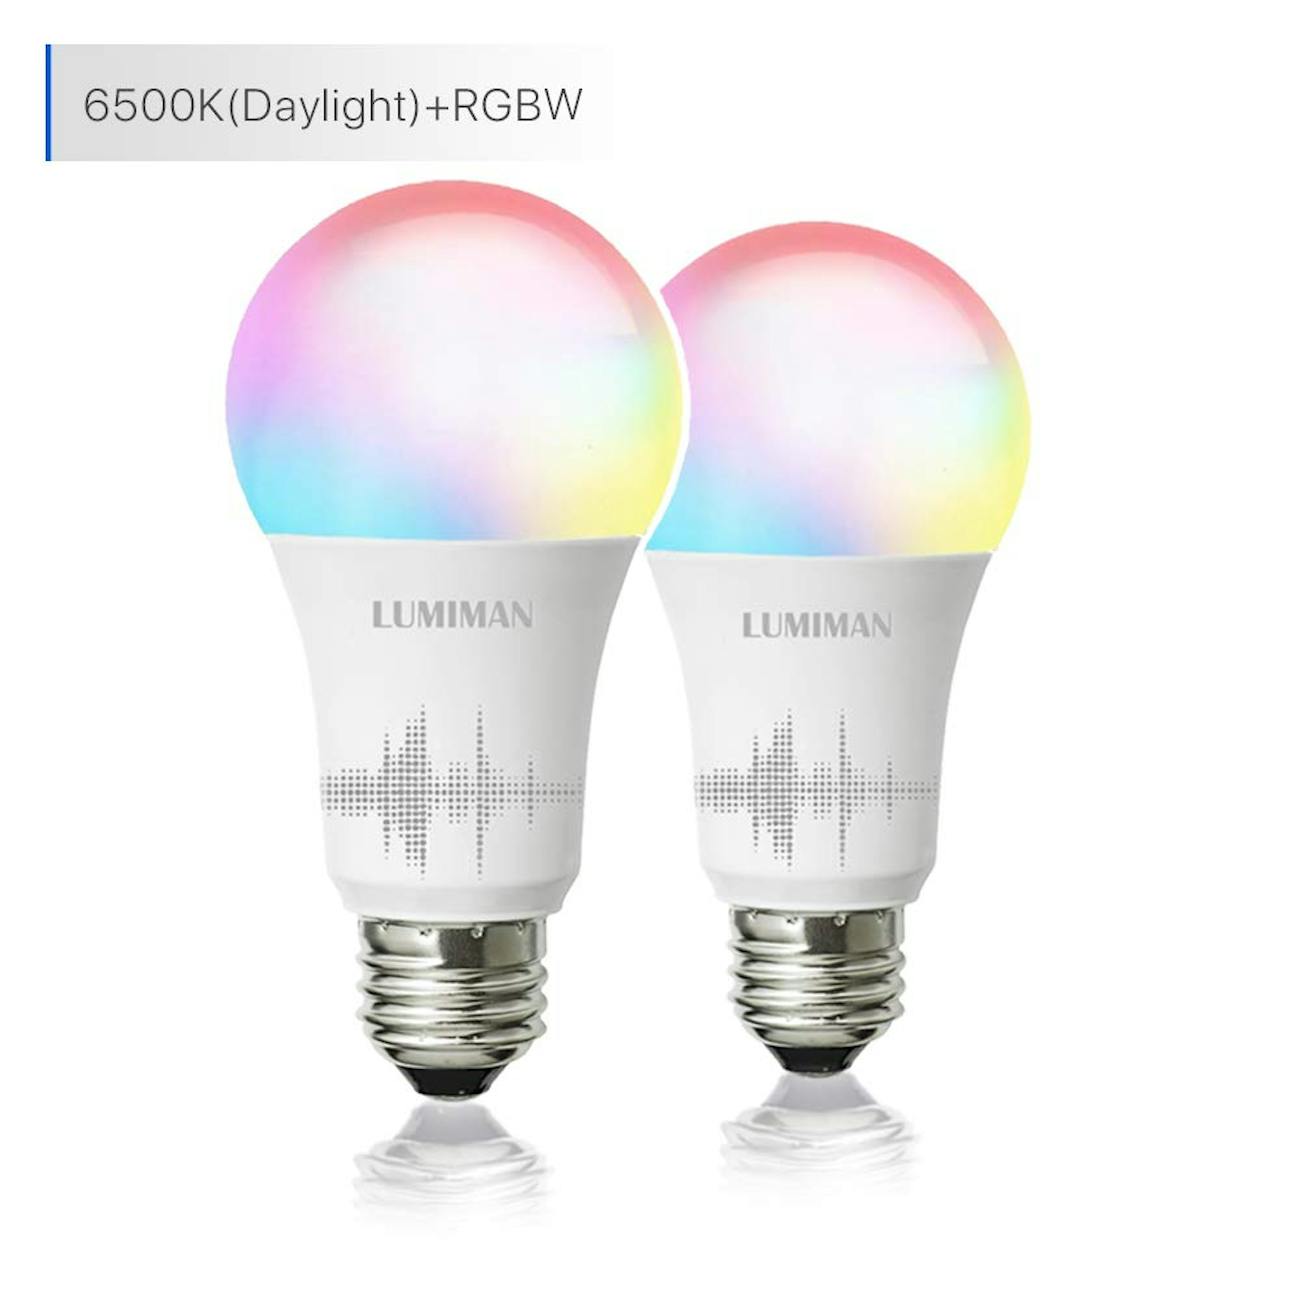 avastradesigneroutlet: Google Smart Light Bulbs Amazon